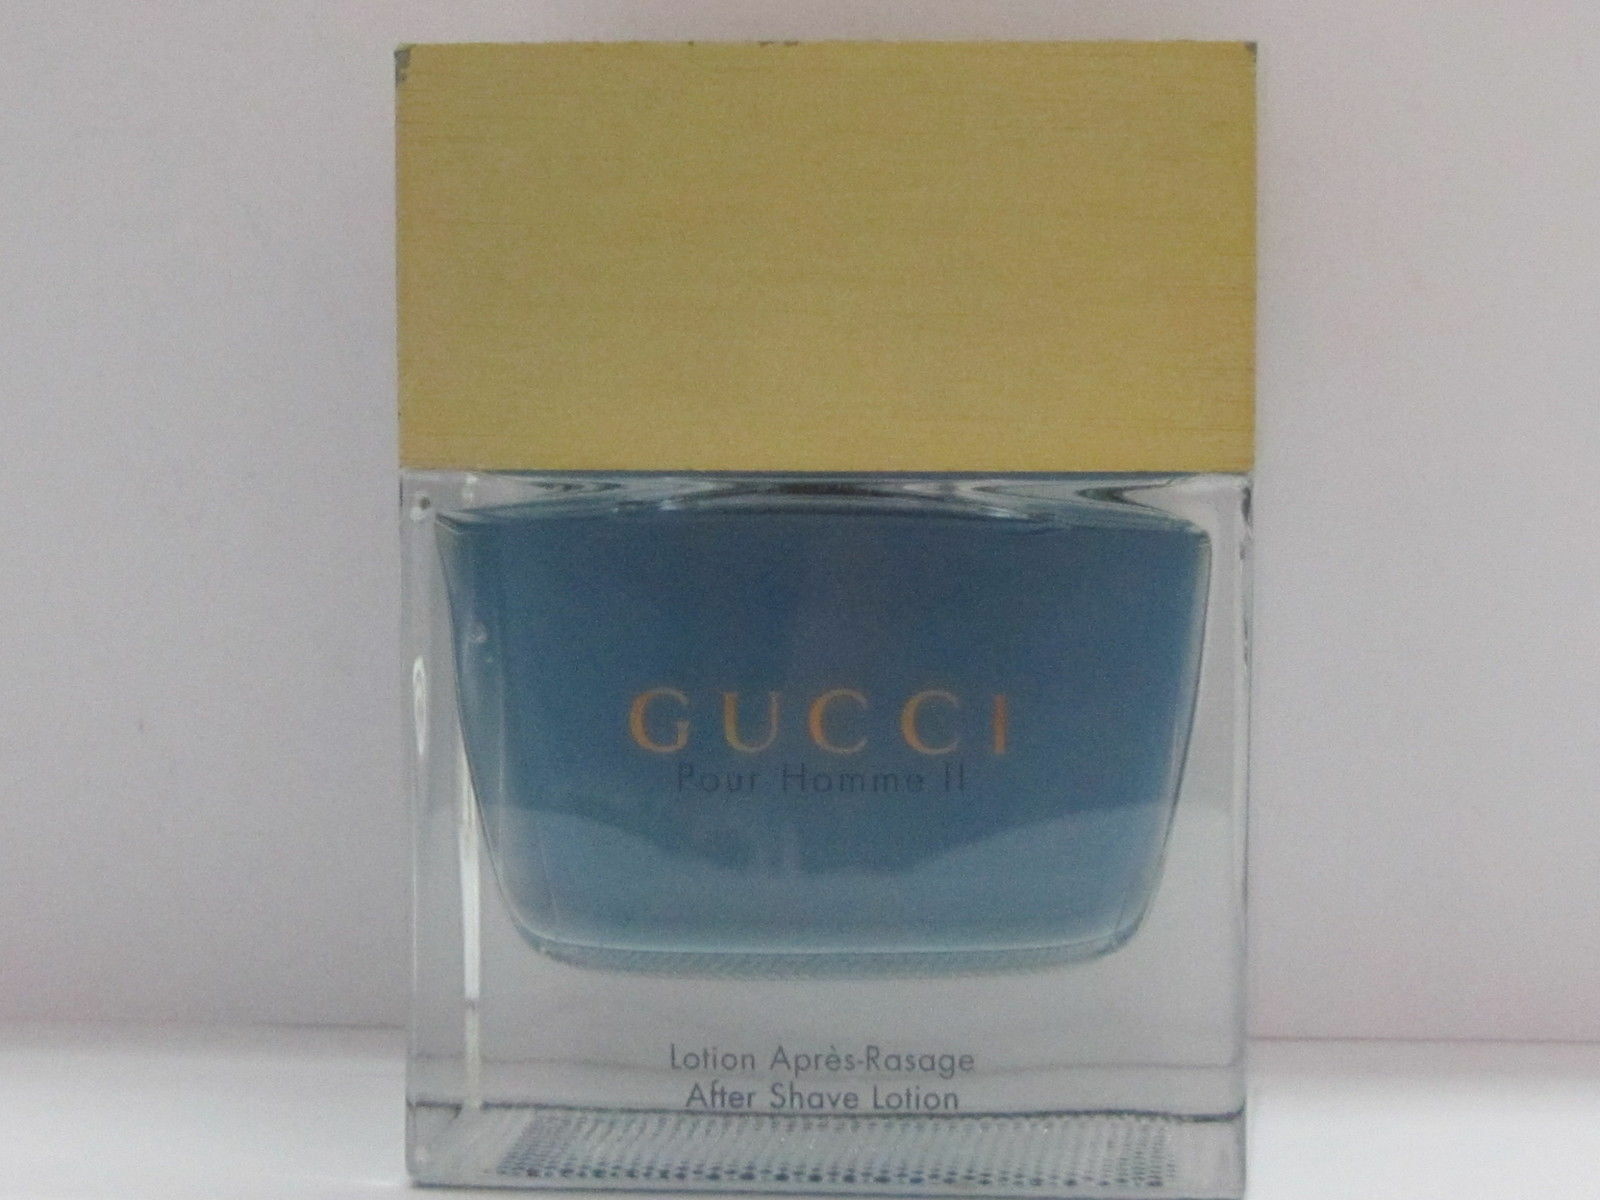 os selv Credential skam Gucci Pour Homme II 3.4oz Men's Aftershave for sale online | eBay